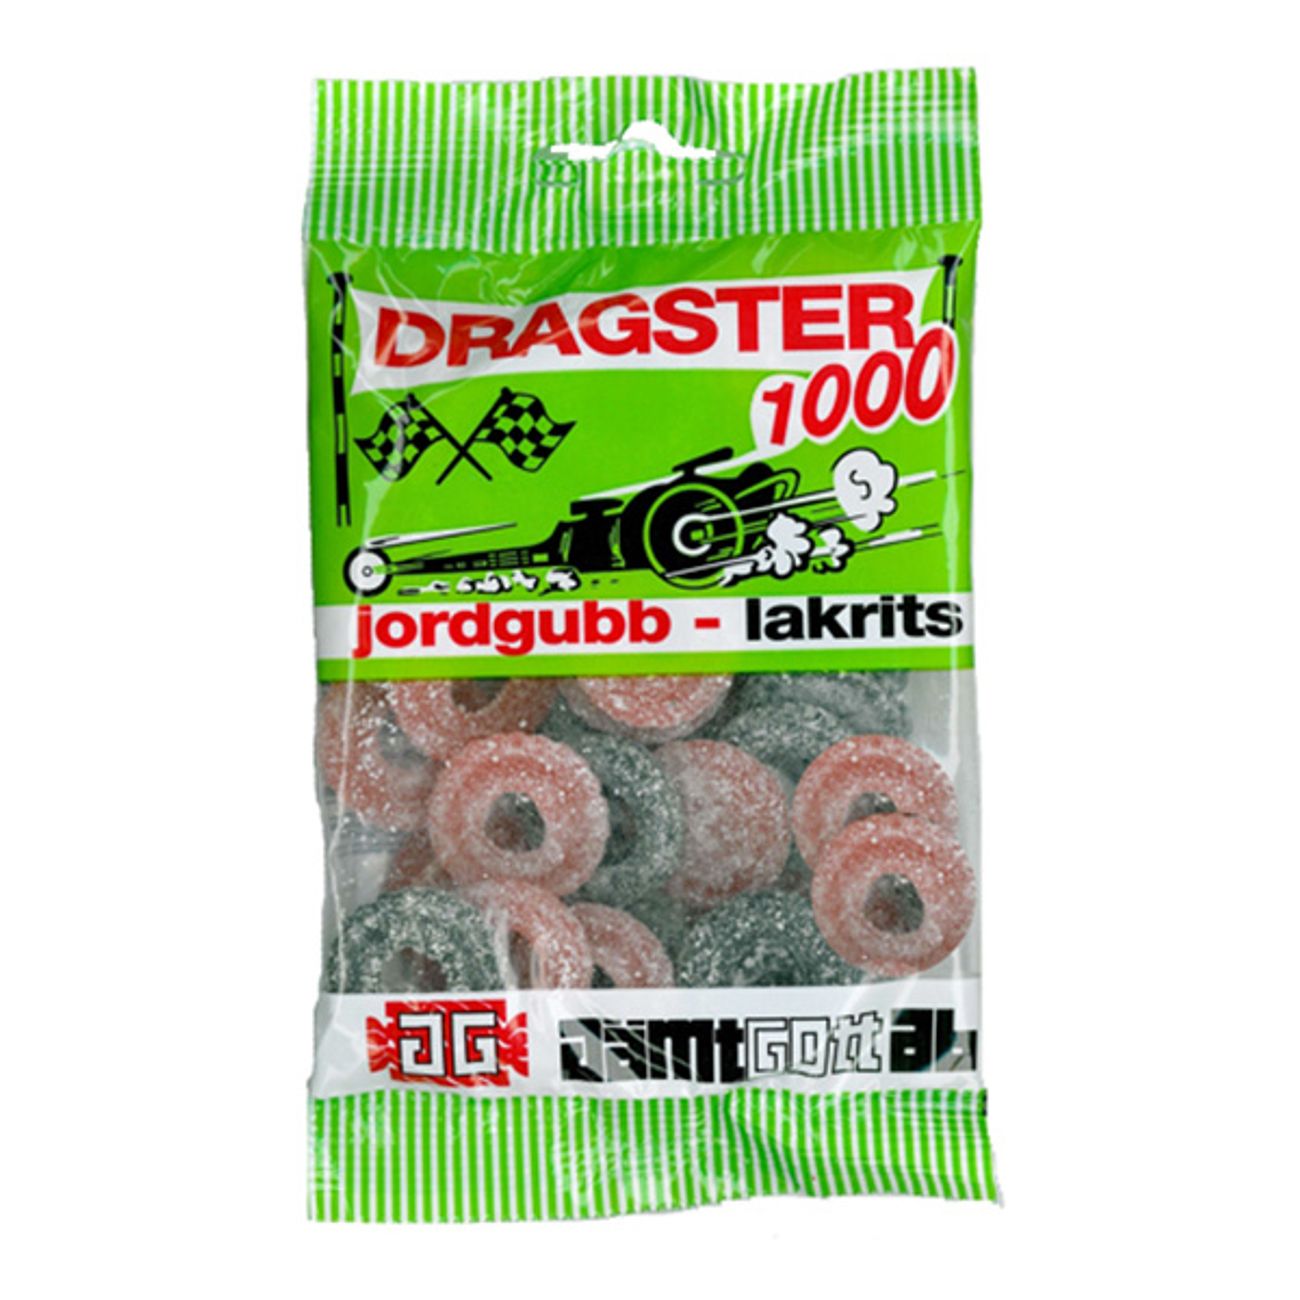 dragster-jordgubblakrits-1